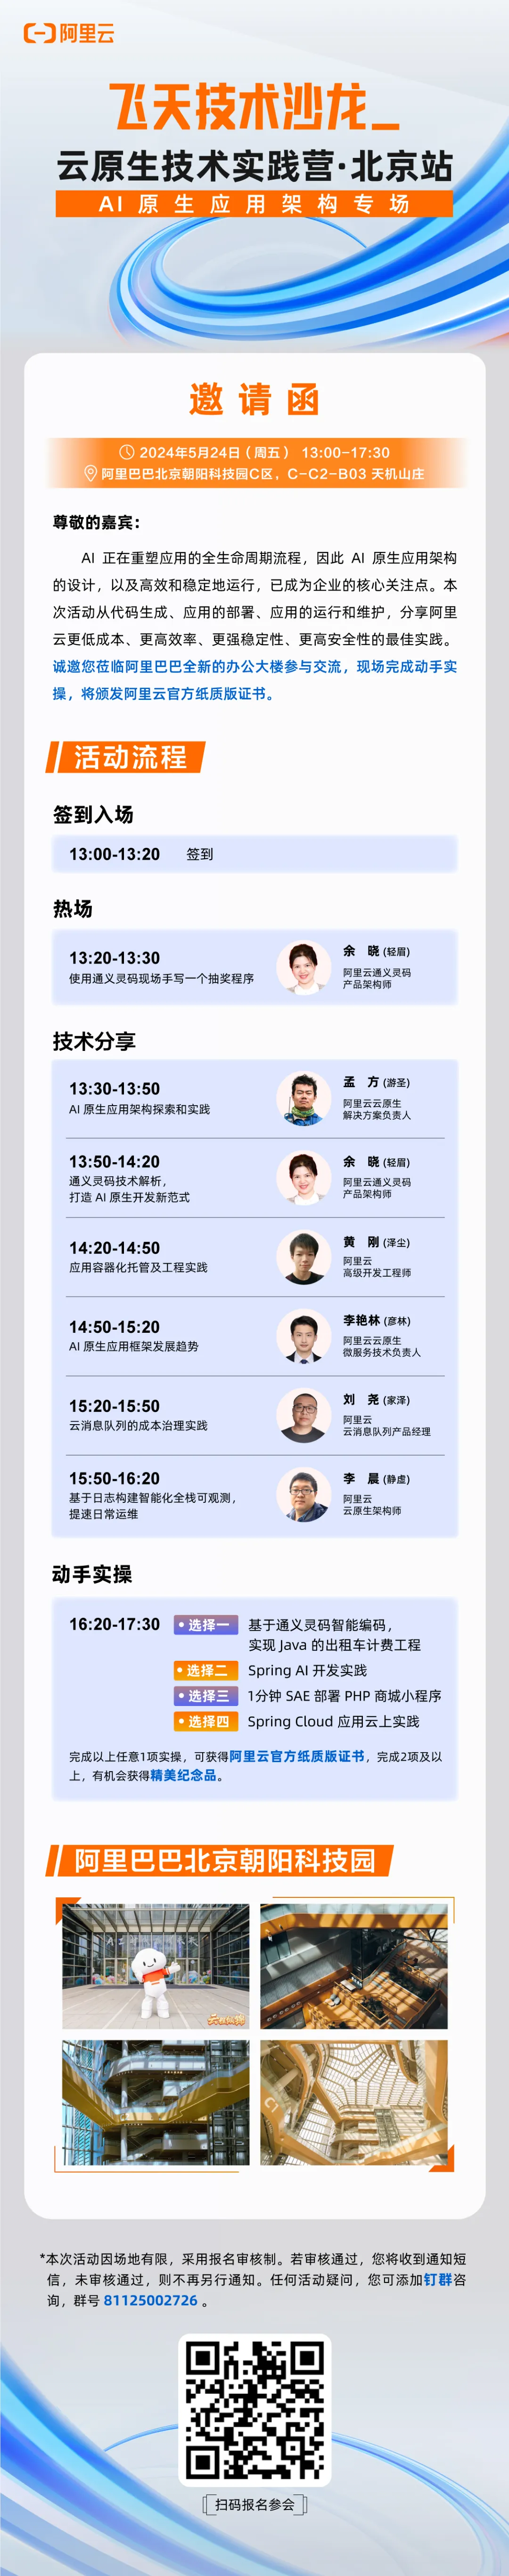 邀您参会丨飞天技术沙龙 AI 原生应用架构专场·北京站